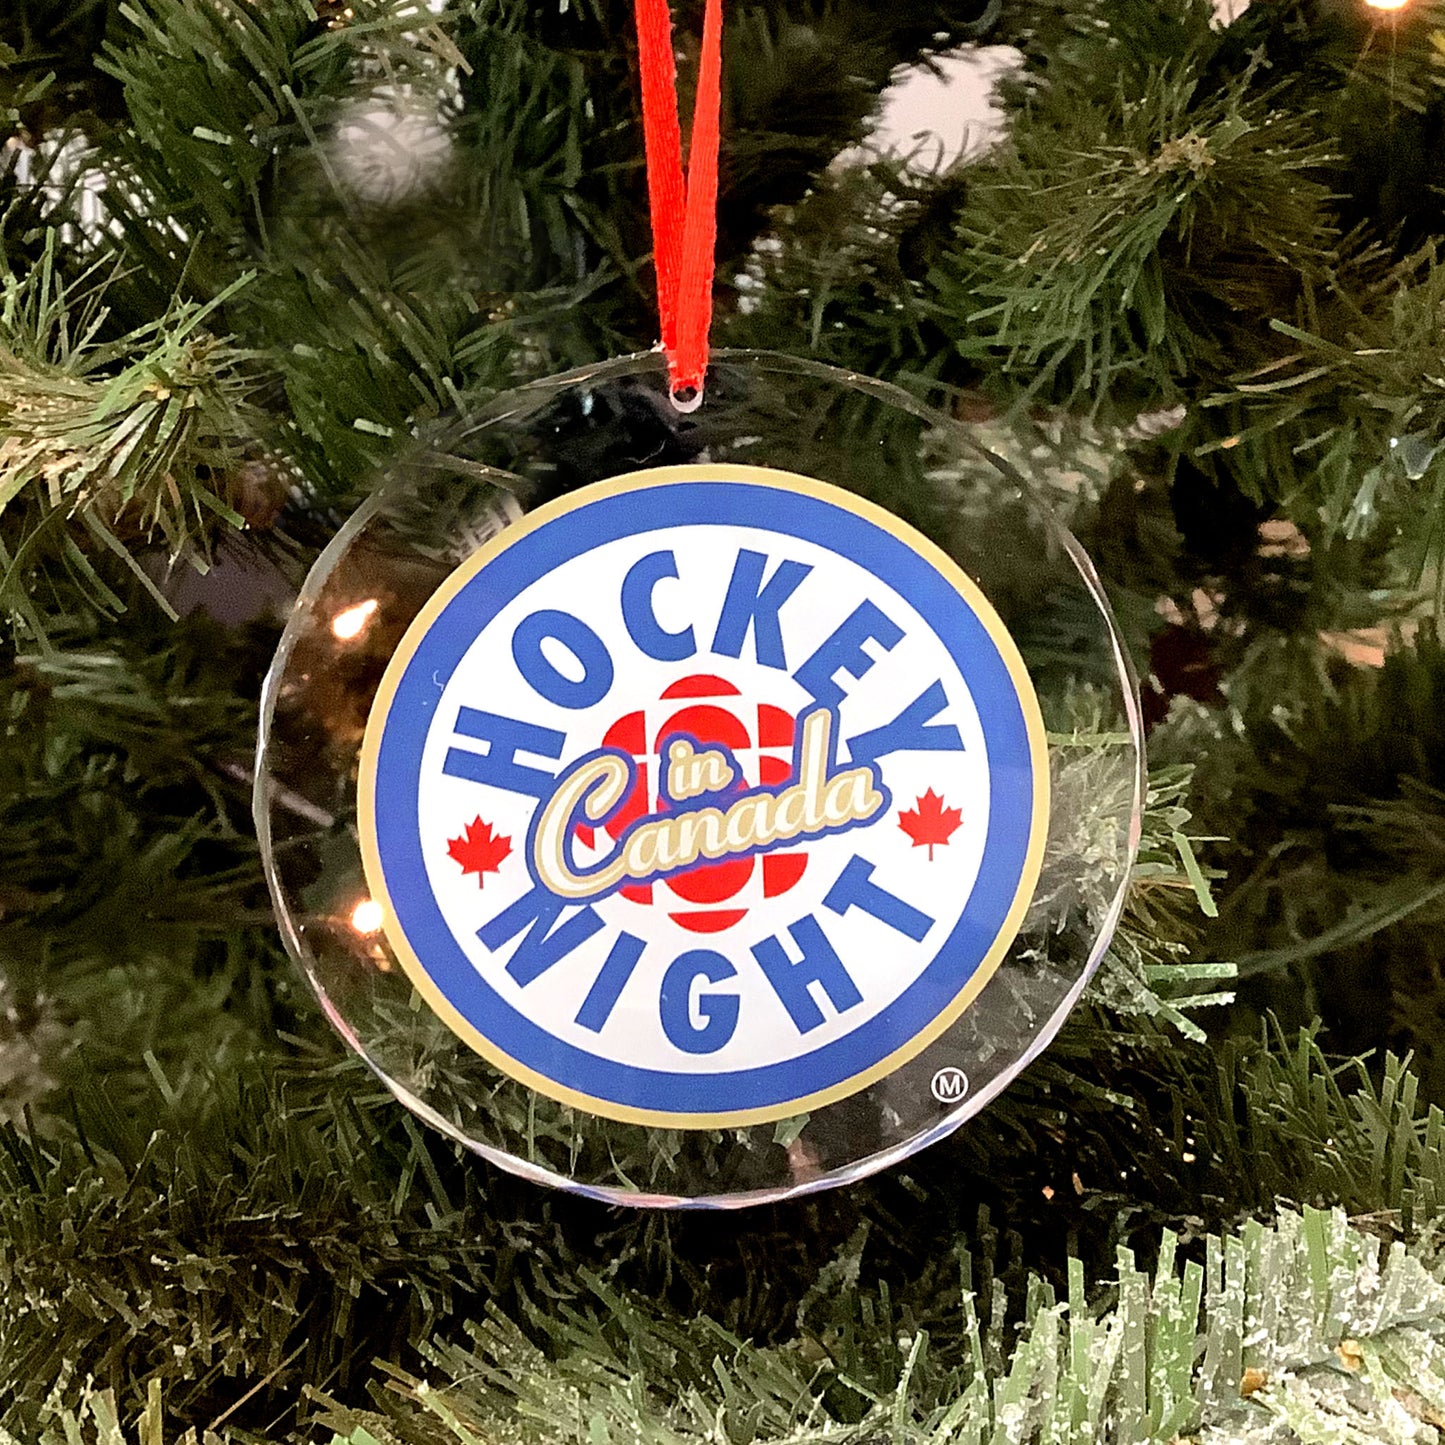 K9 Crystal Ornament - Hockey Night in Canada New logo